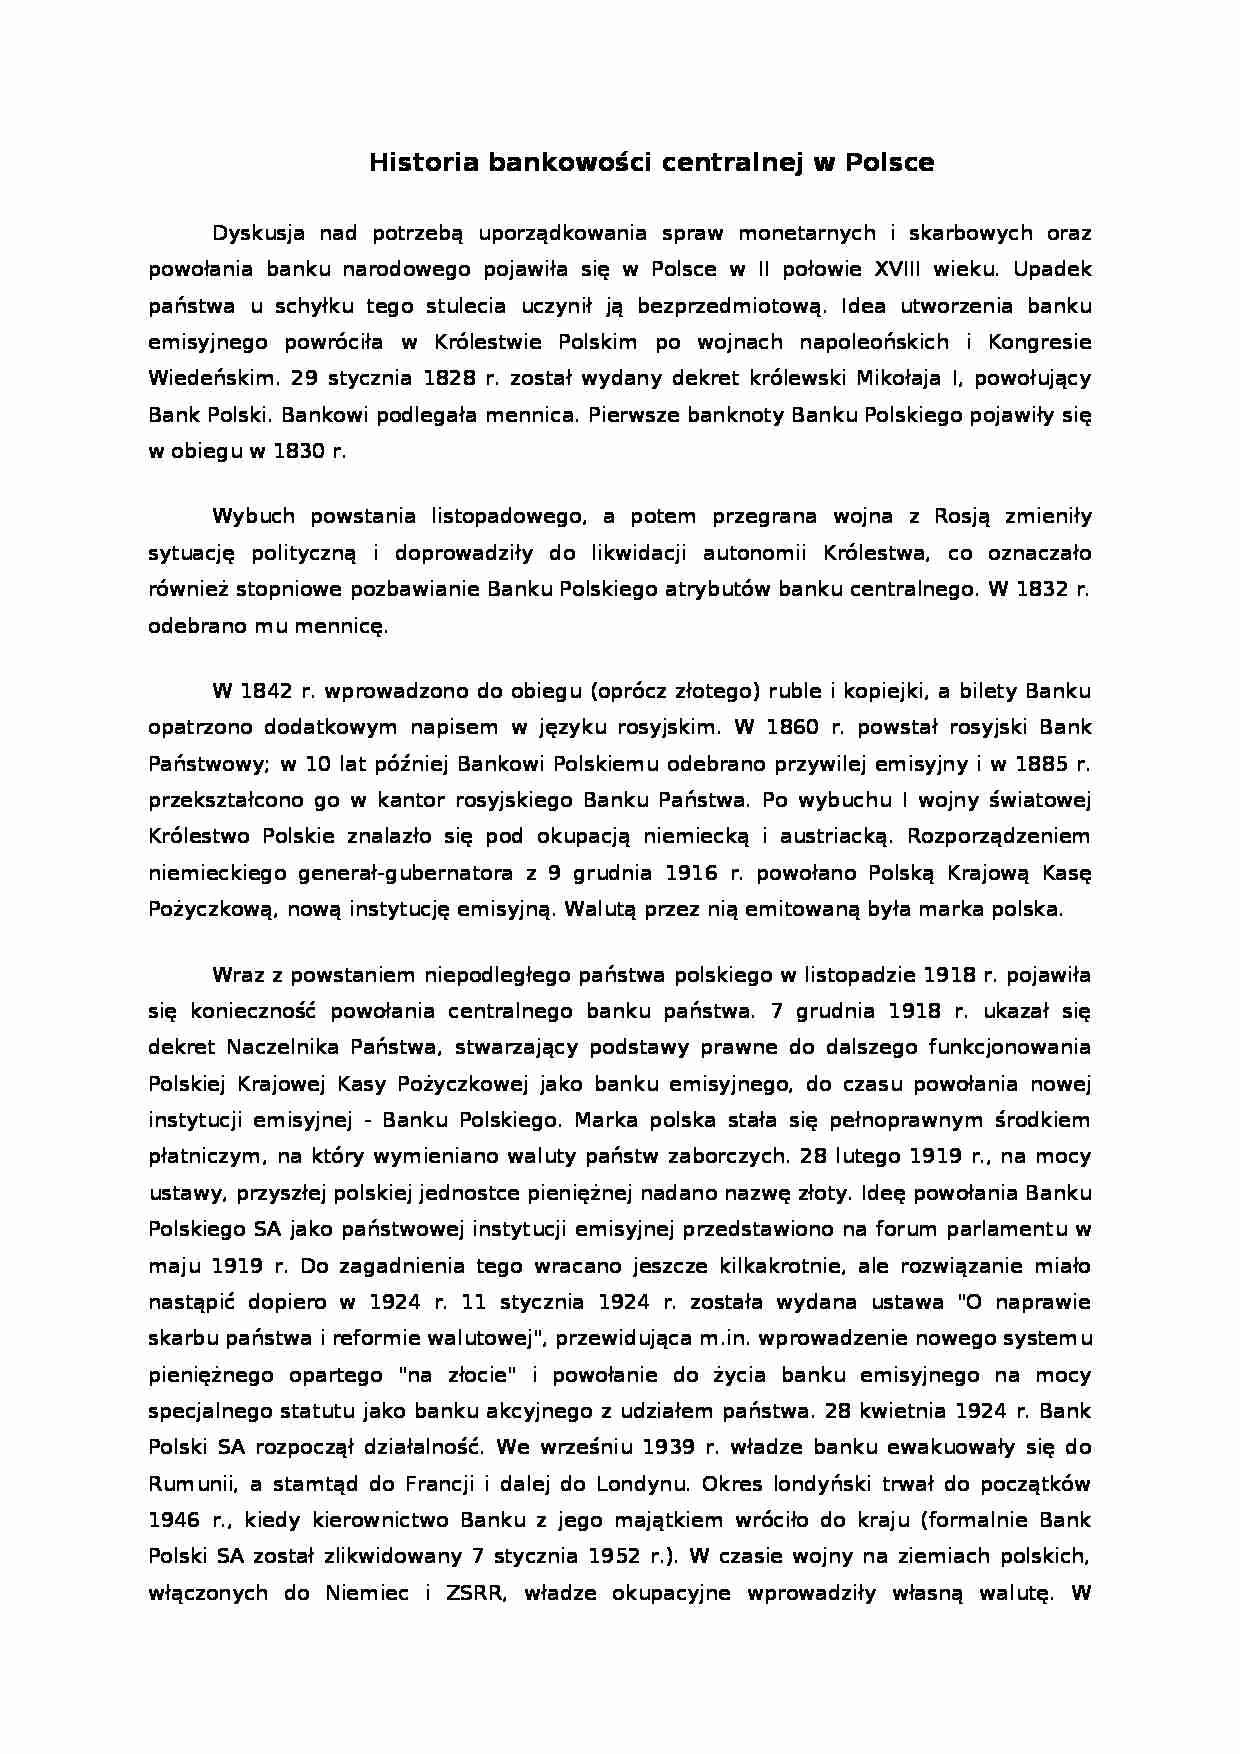 Historia bankowości centralnej w Polsce - Narodowy Bank Polski - strona 1